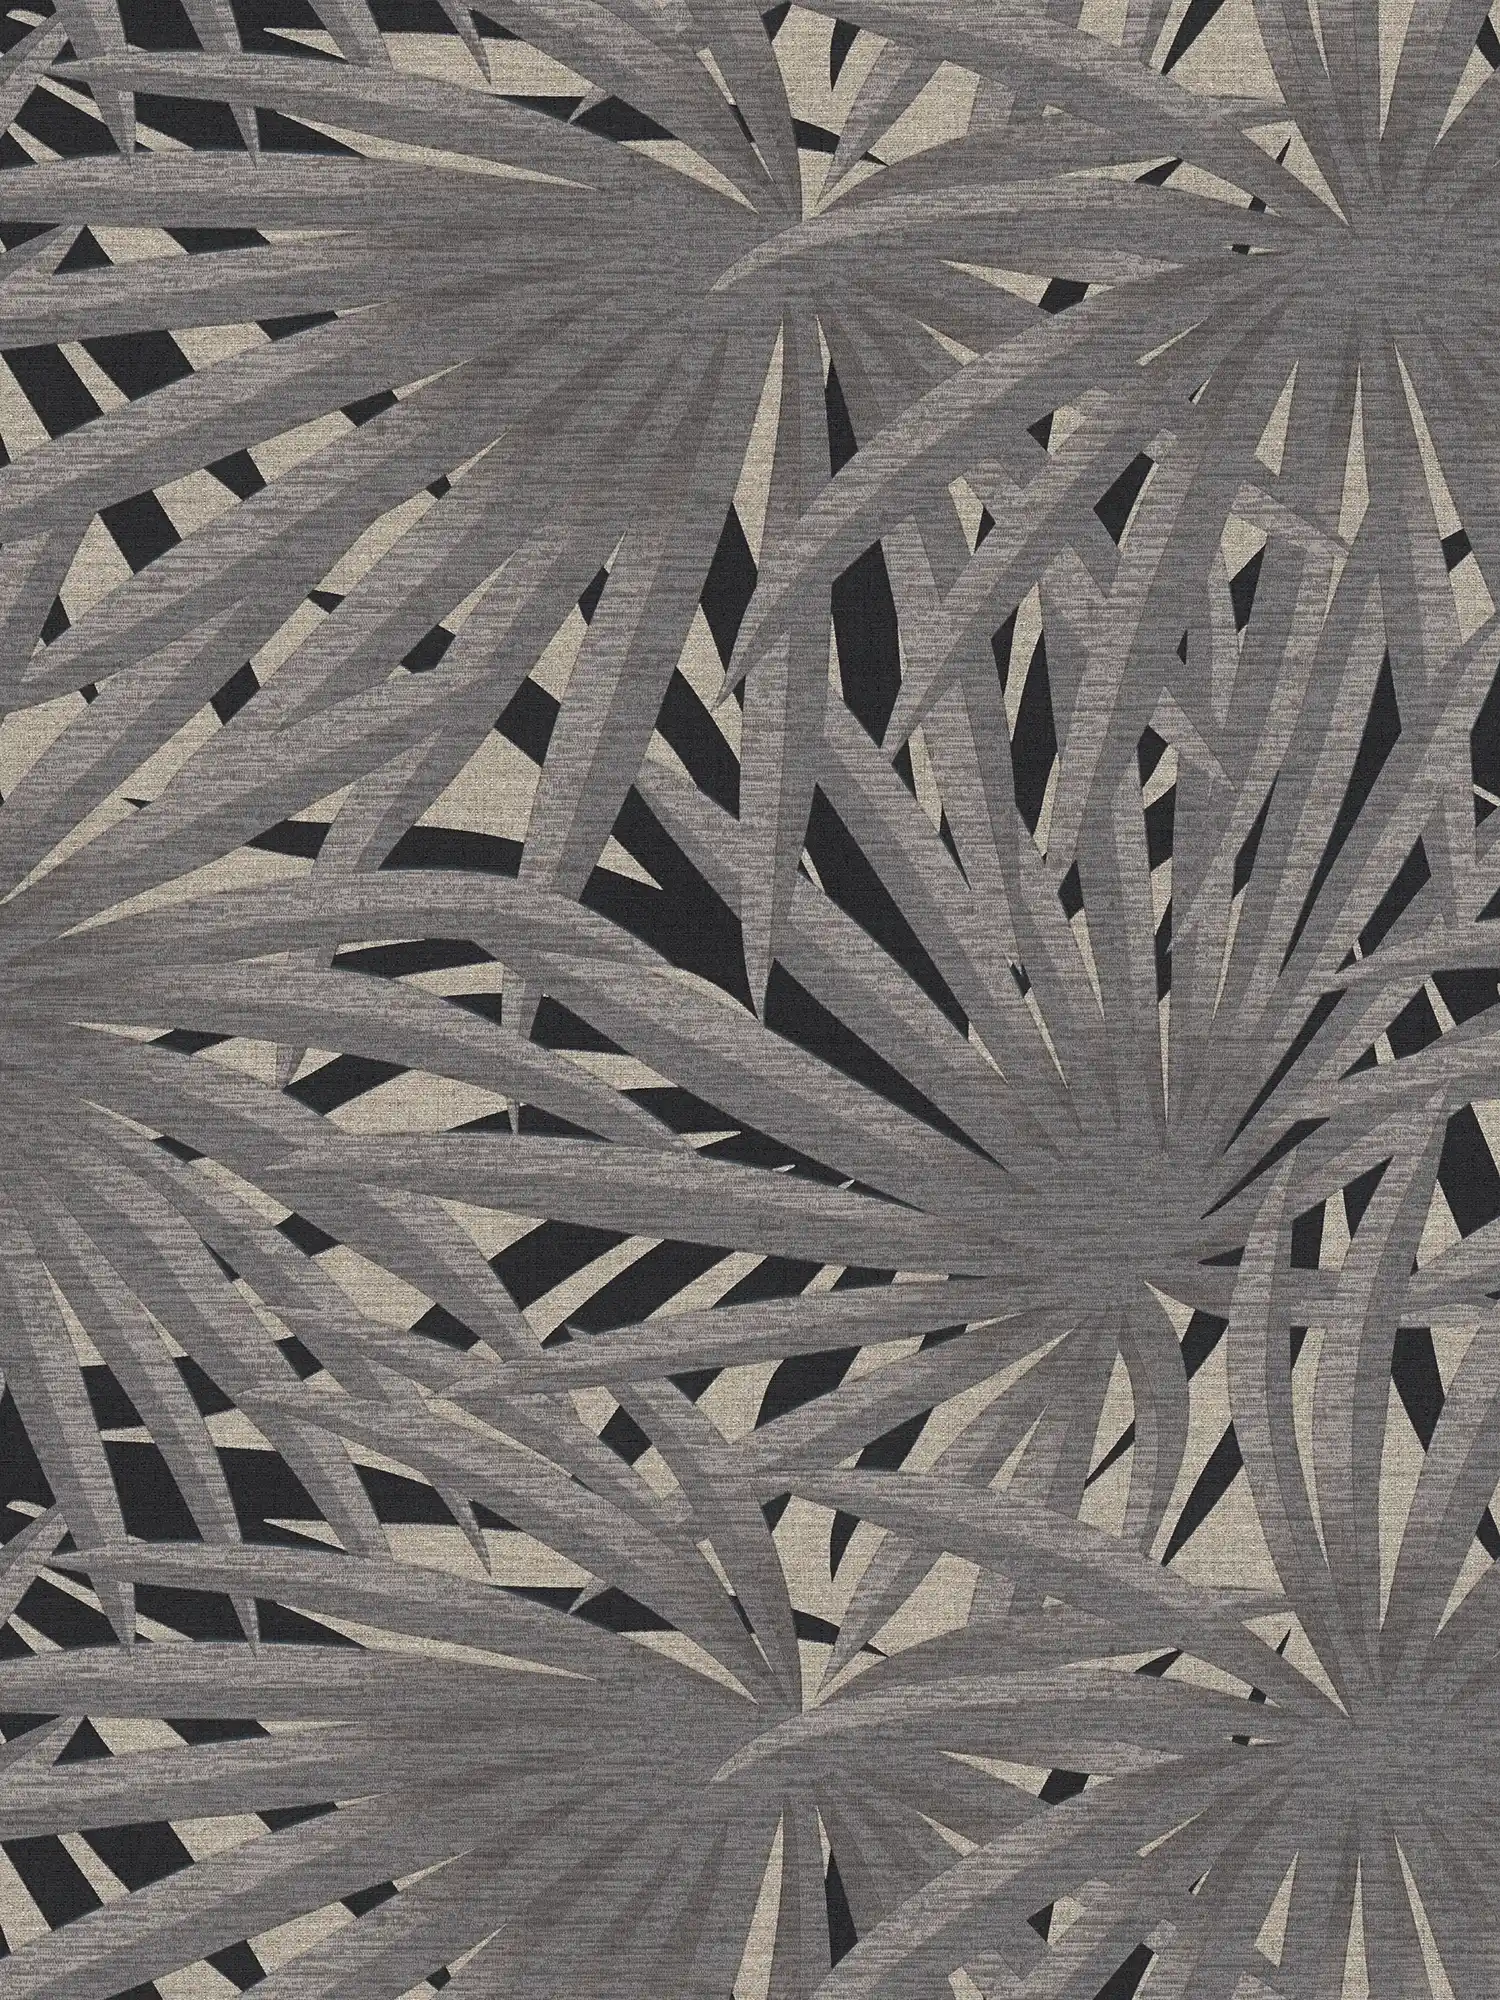         Vliestapete Dschungel Design mit Metallic-Effekt – Grau, Metallic, Schwarz
    